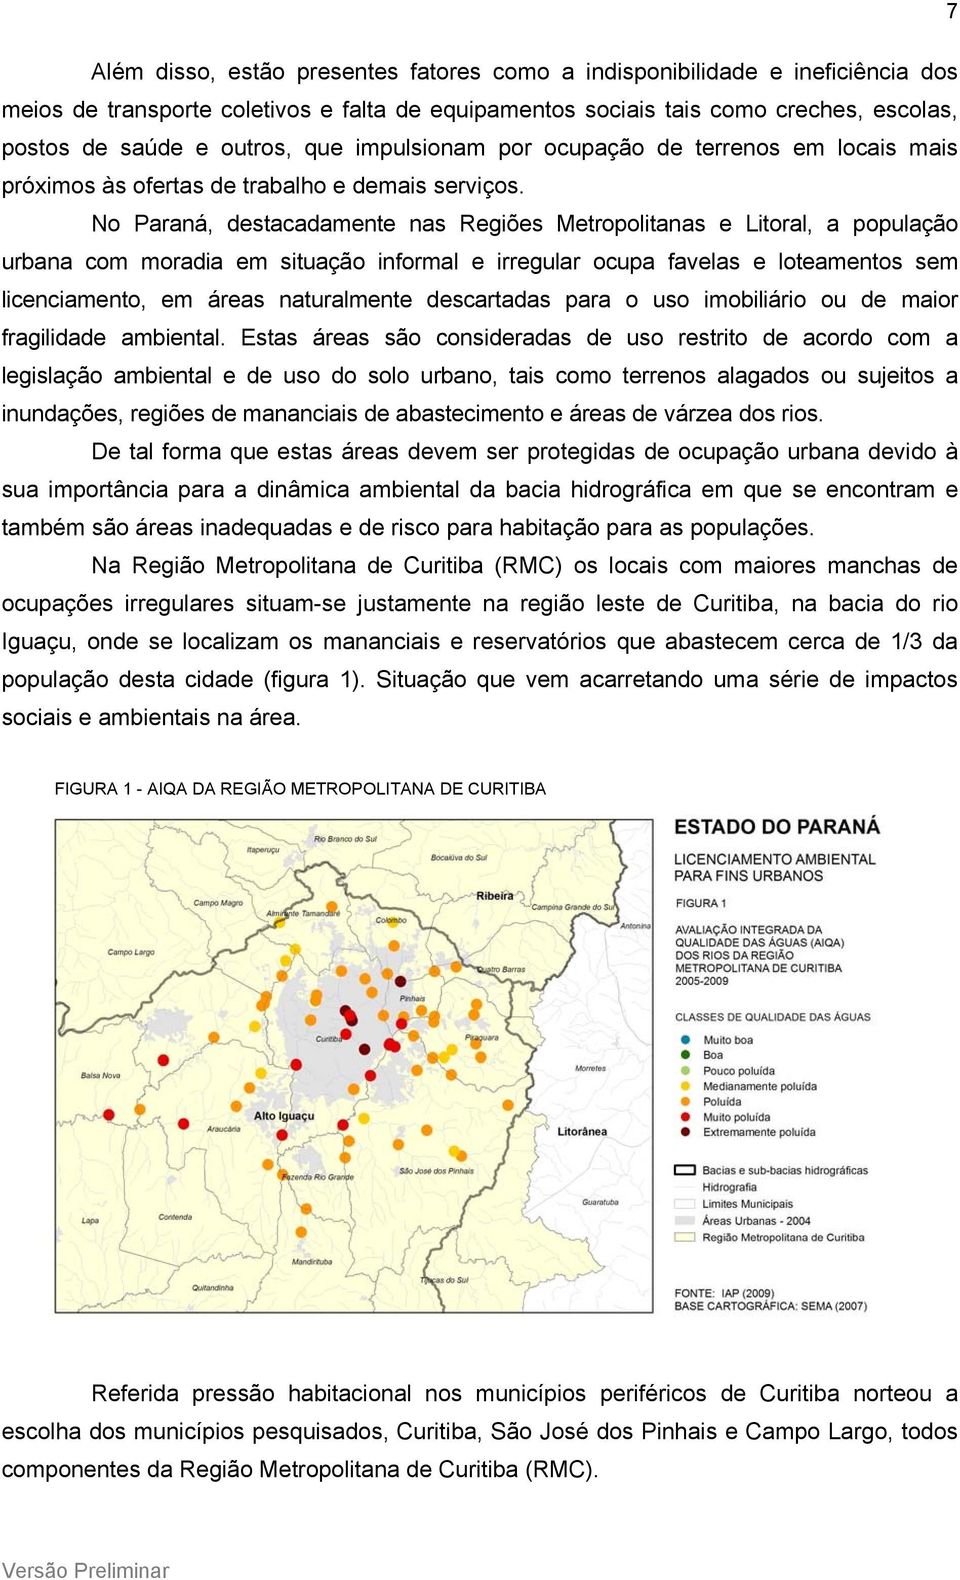 No Paraná, destacadamente nas Regiões Metropolitanas e Litoral, a população urbana com moradia em situação informal e irregular ocupa favelas e loteamentos sem licenciamento, em áreas naturalmente